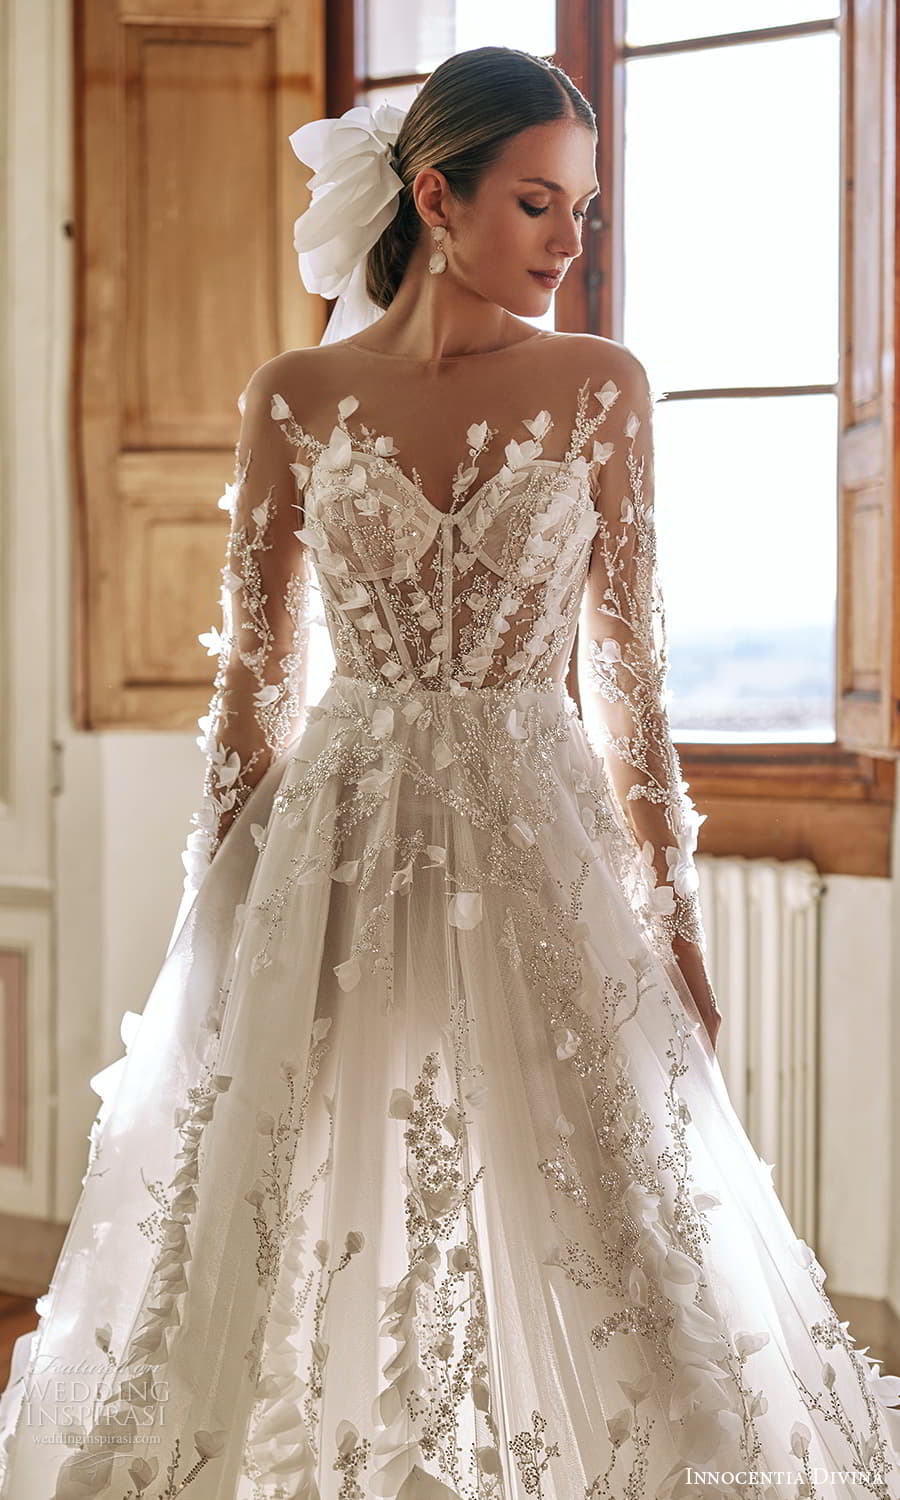 Arianna - Innocentia Bridal Dresses